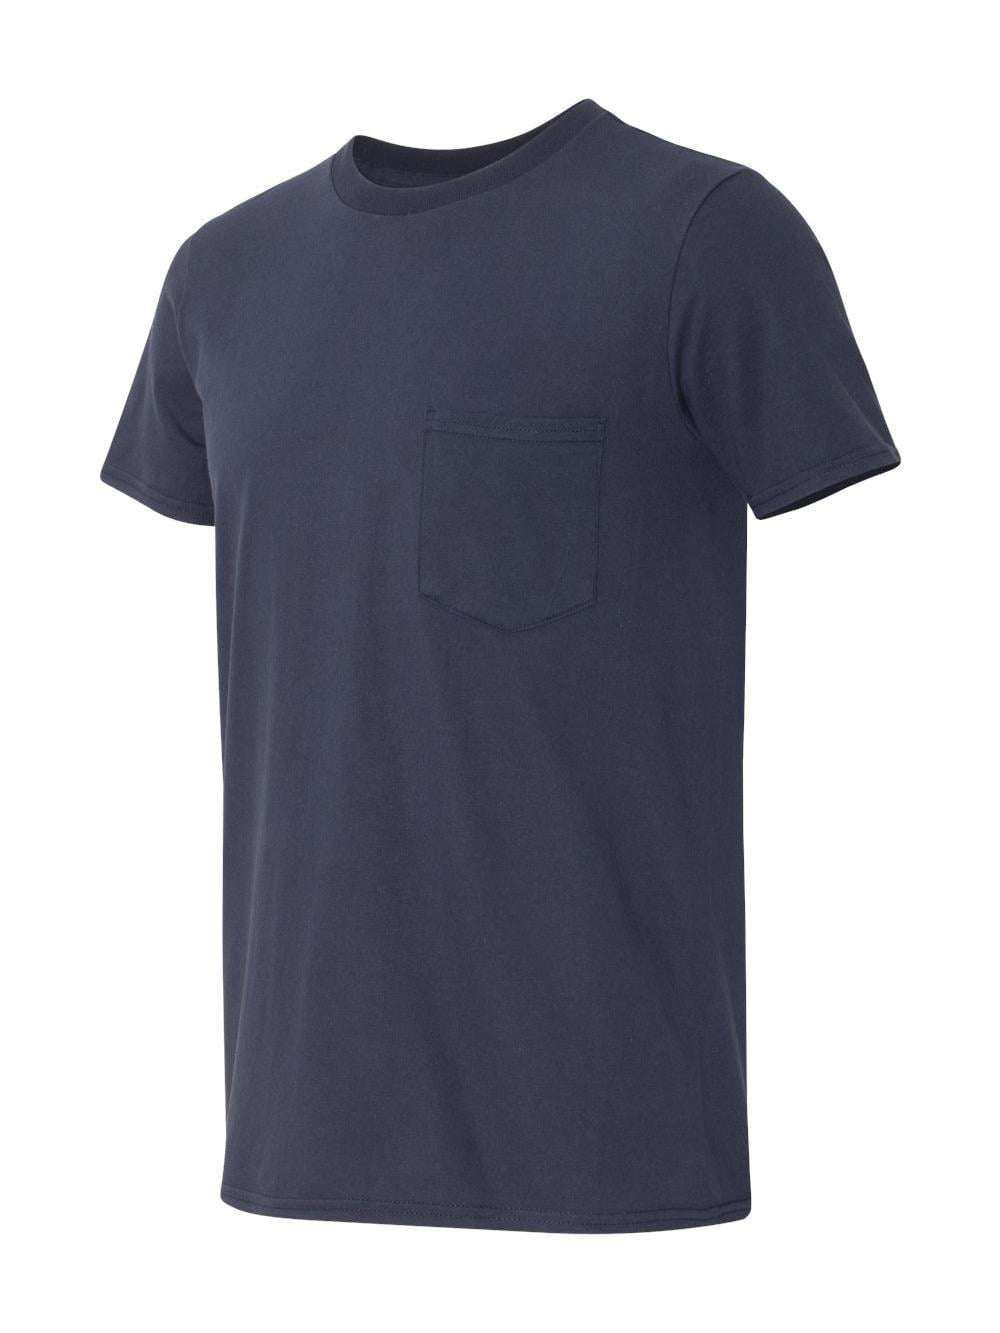 Anvil Lightweight Pocket T-Shirt 983 